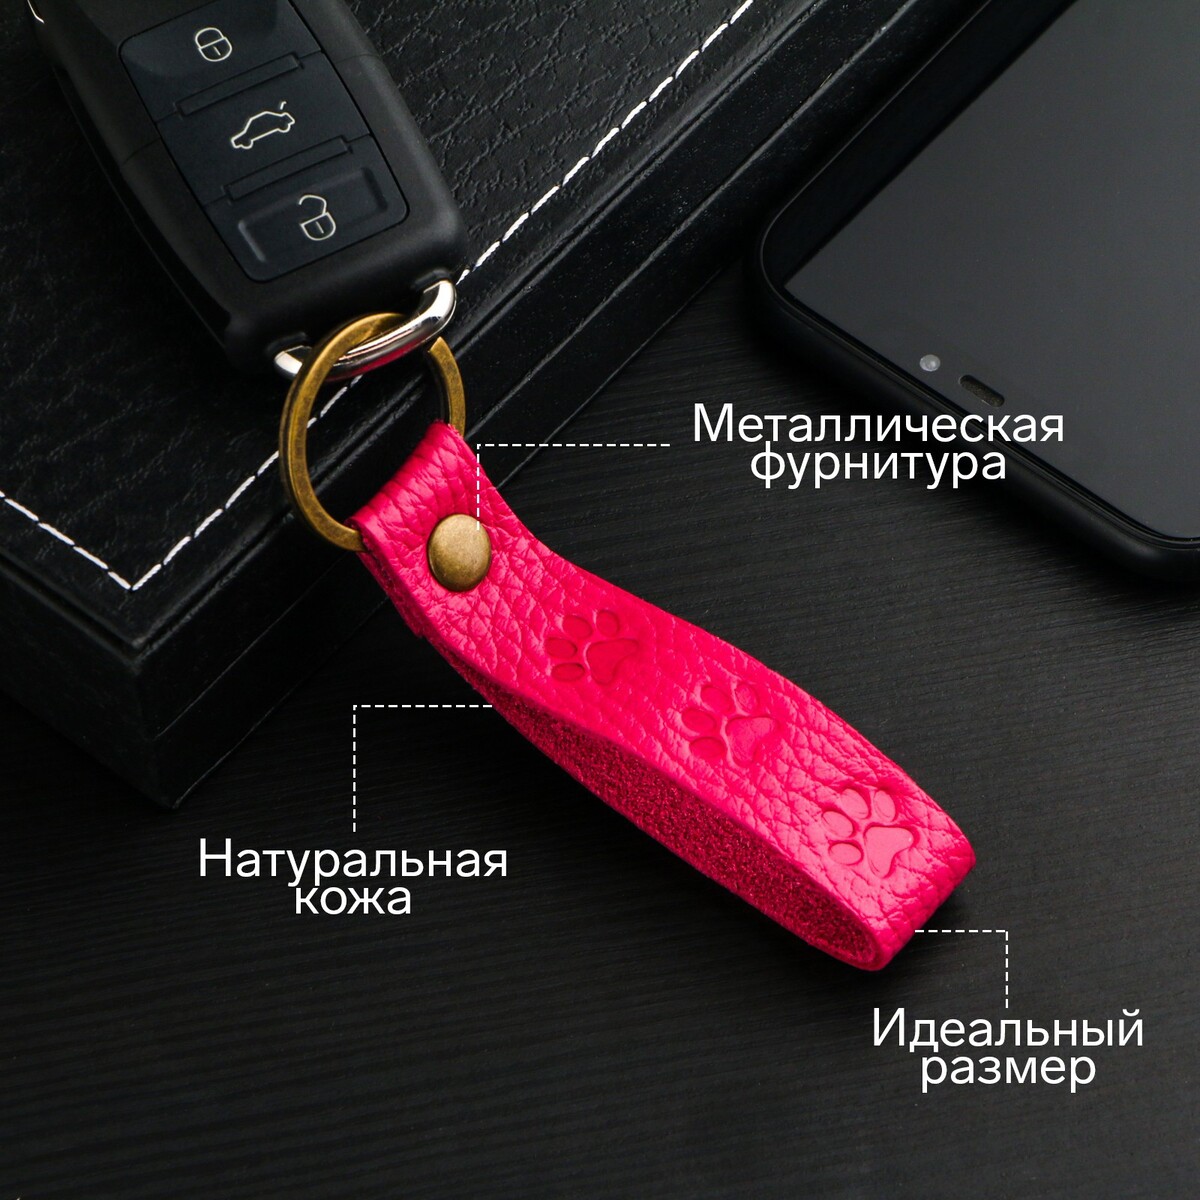 Брелок для автомобильного ключа, ремешок, натуральная кожа, розовый, лапка брелок для автомобильного ключа маска заяц натуральная кожа 9710409